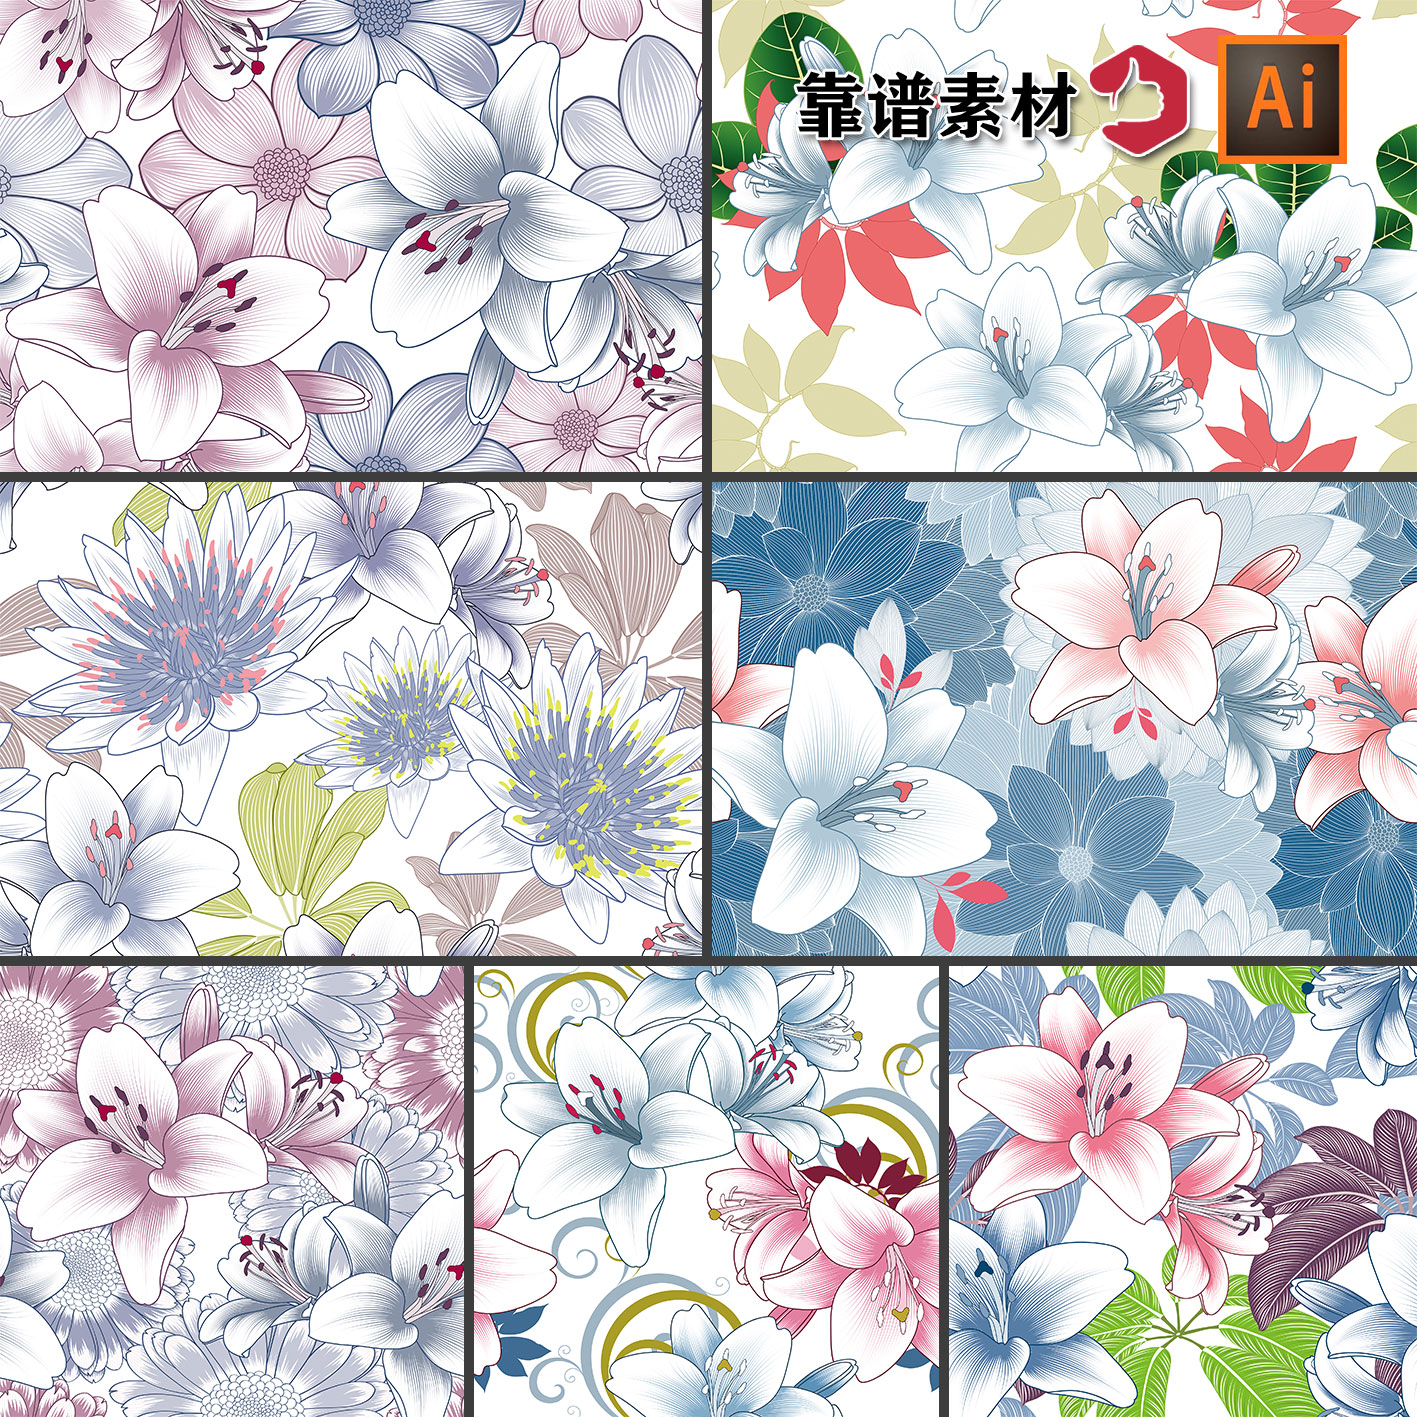 漂亮的百合花鲜花花朵花卉服饰墙纸地毯印花图案AI矢量设计素材